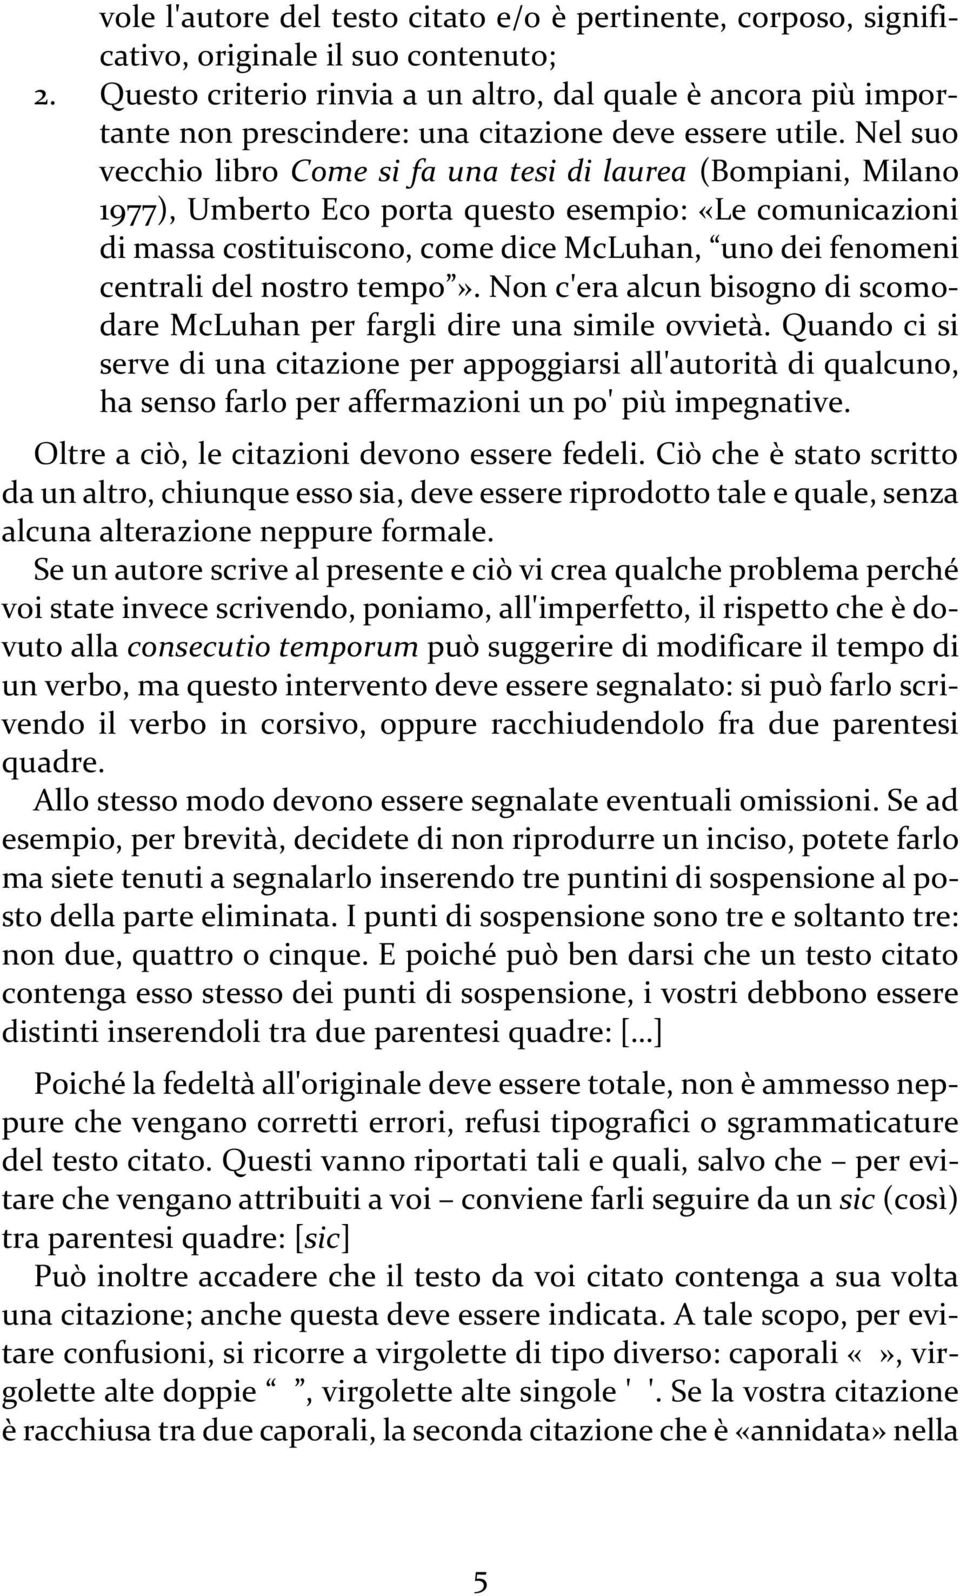 Nel suo vecchio libro Come si fa una tesi di laurea (Bompiani, Milano 1977), Umberto Eco porta questo esempio: «Le comunicazioni di massa costituiscono, come dice McLuhan, uno dei fenomeni centrali